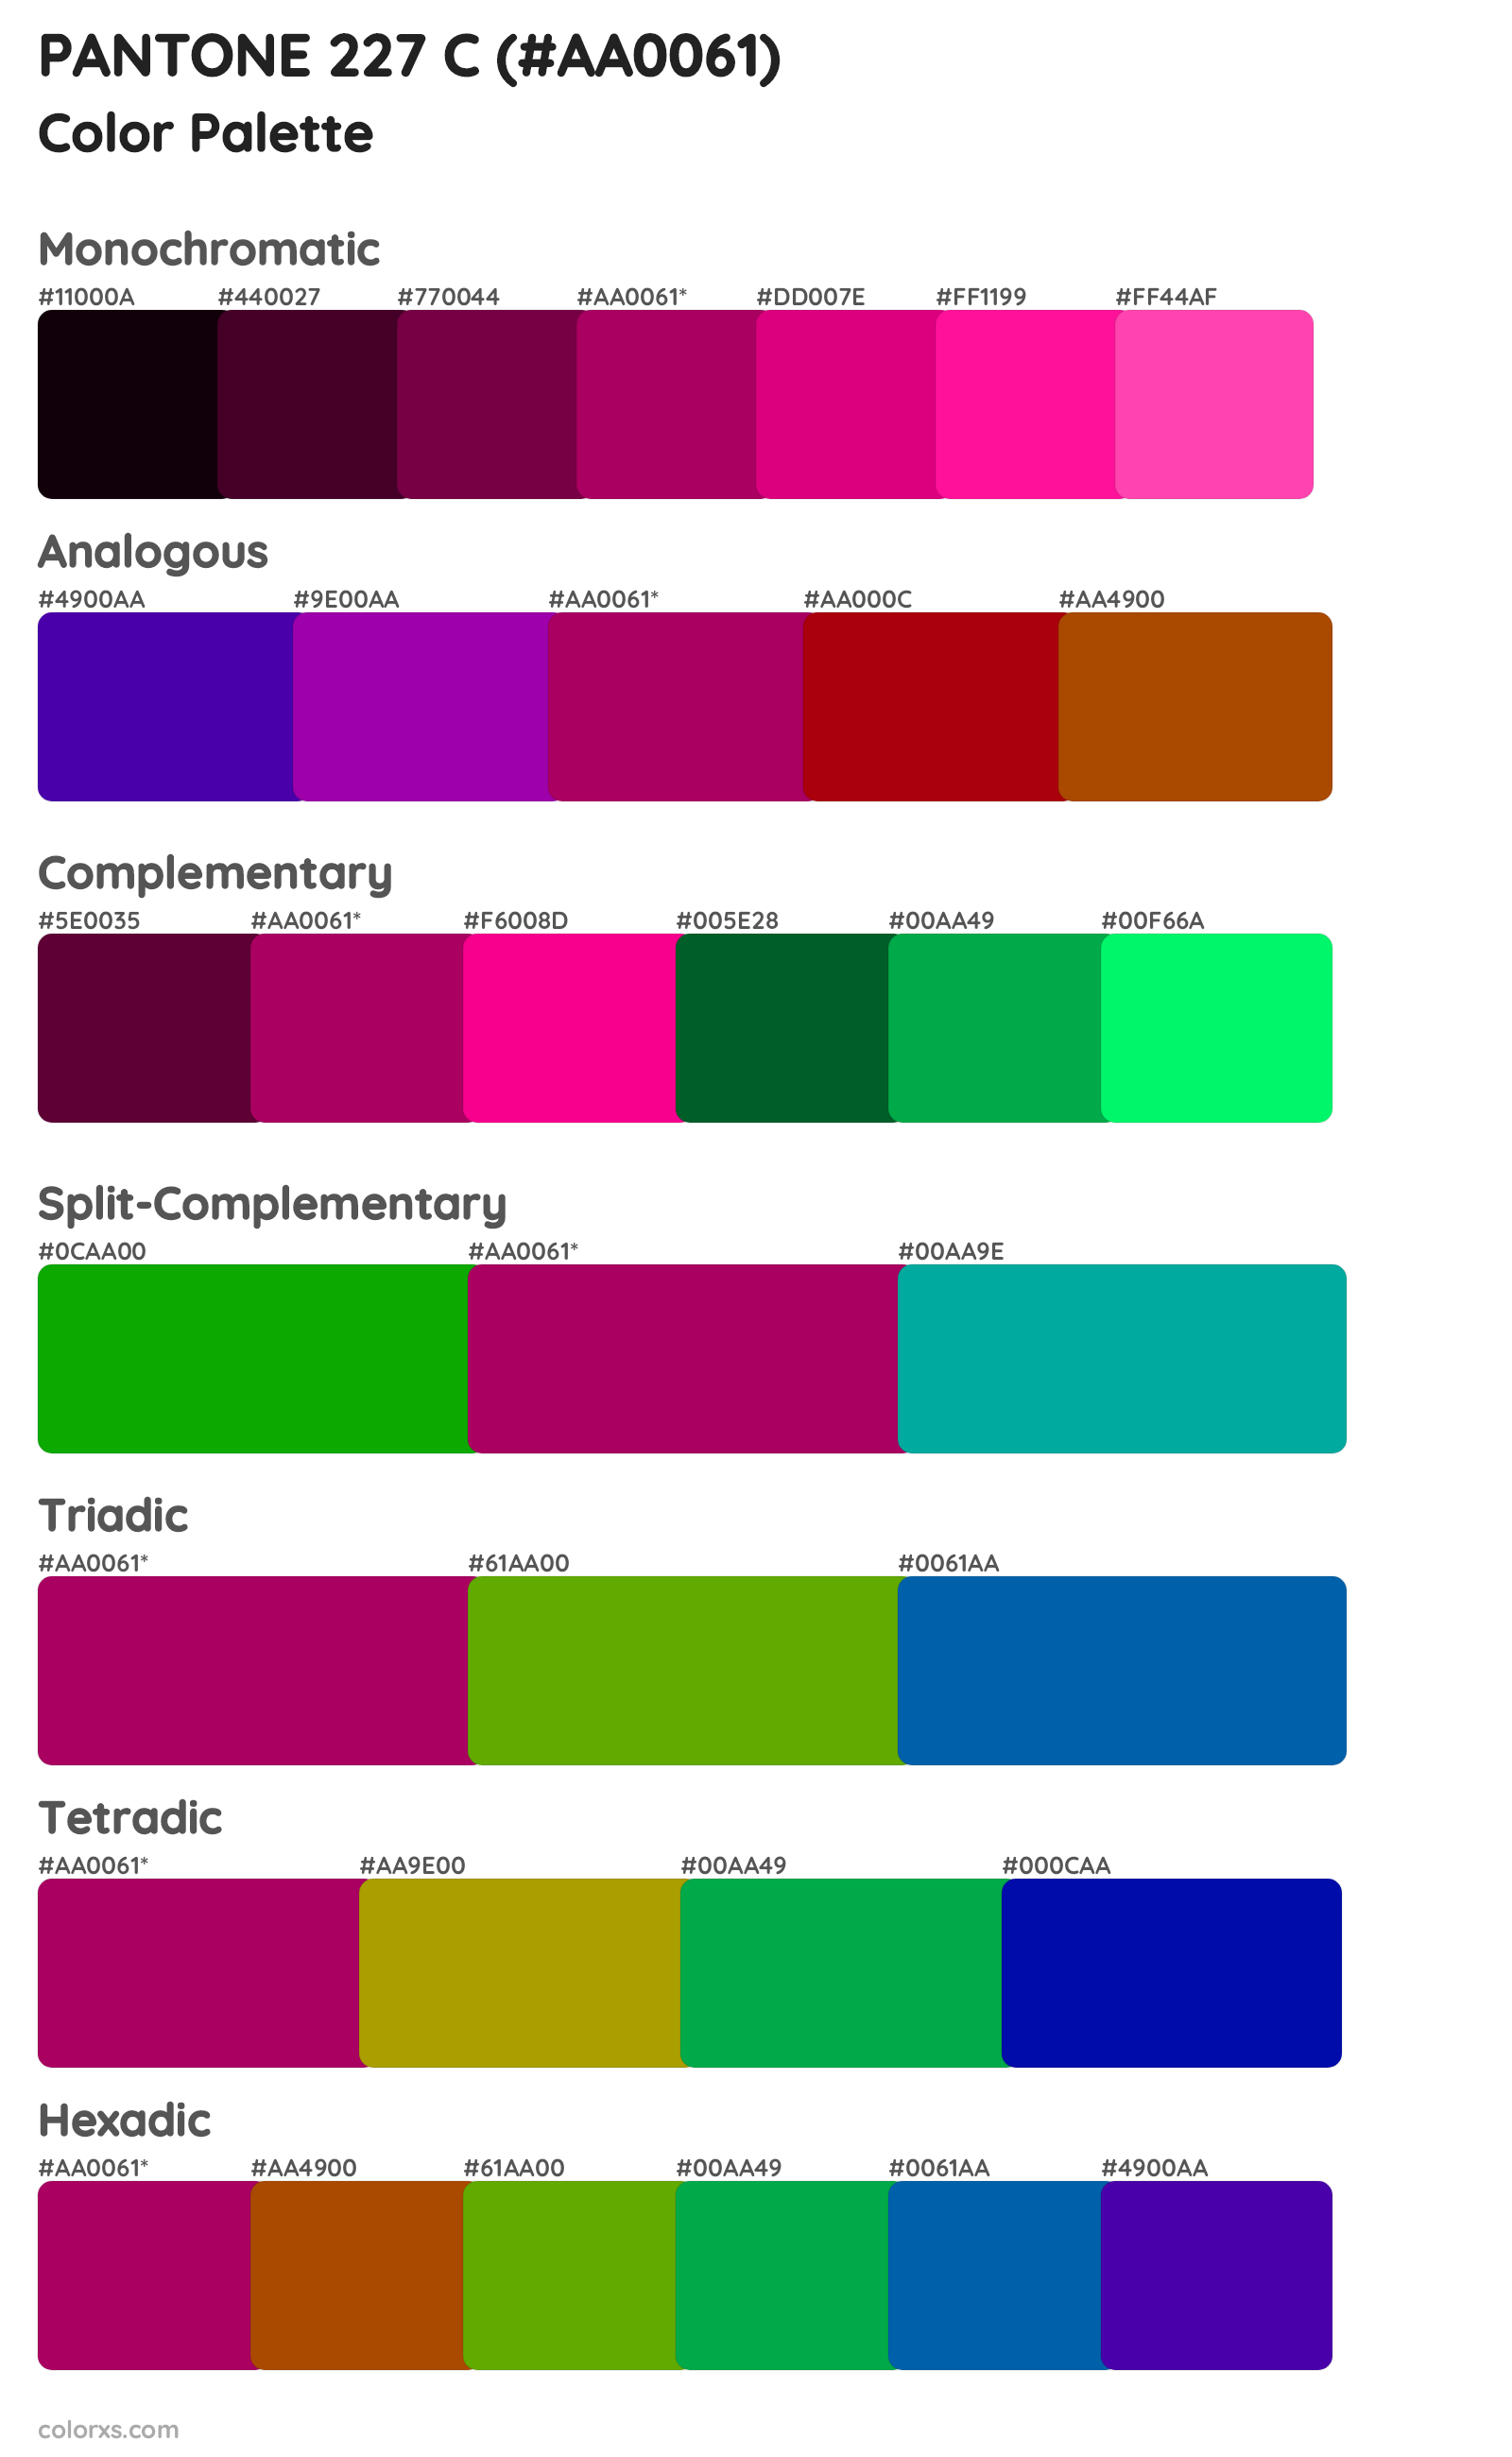 PANTONE 227 C Color Scheme Palettes